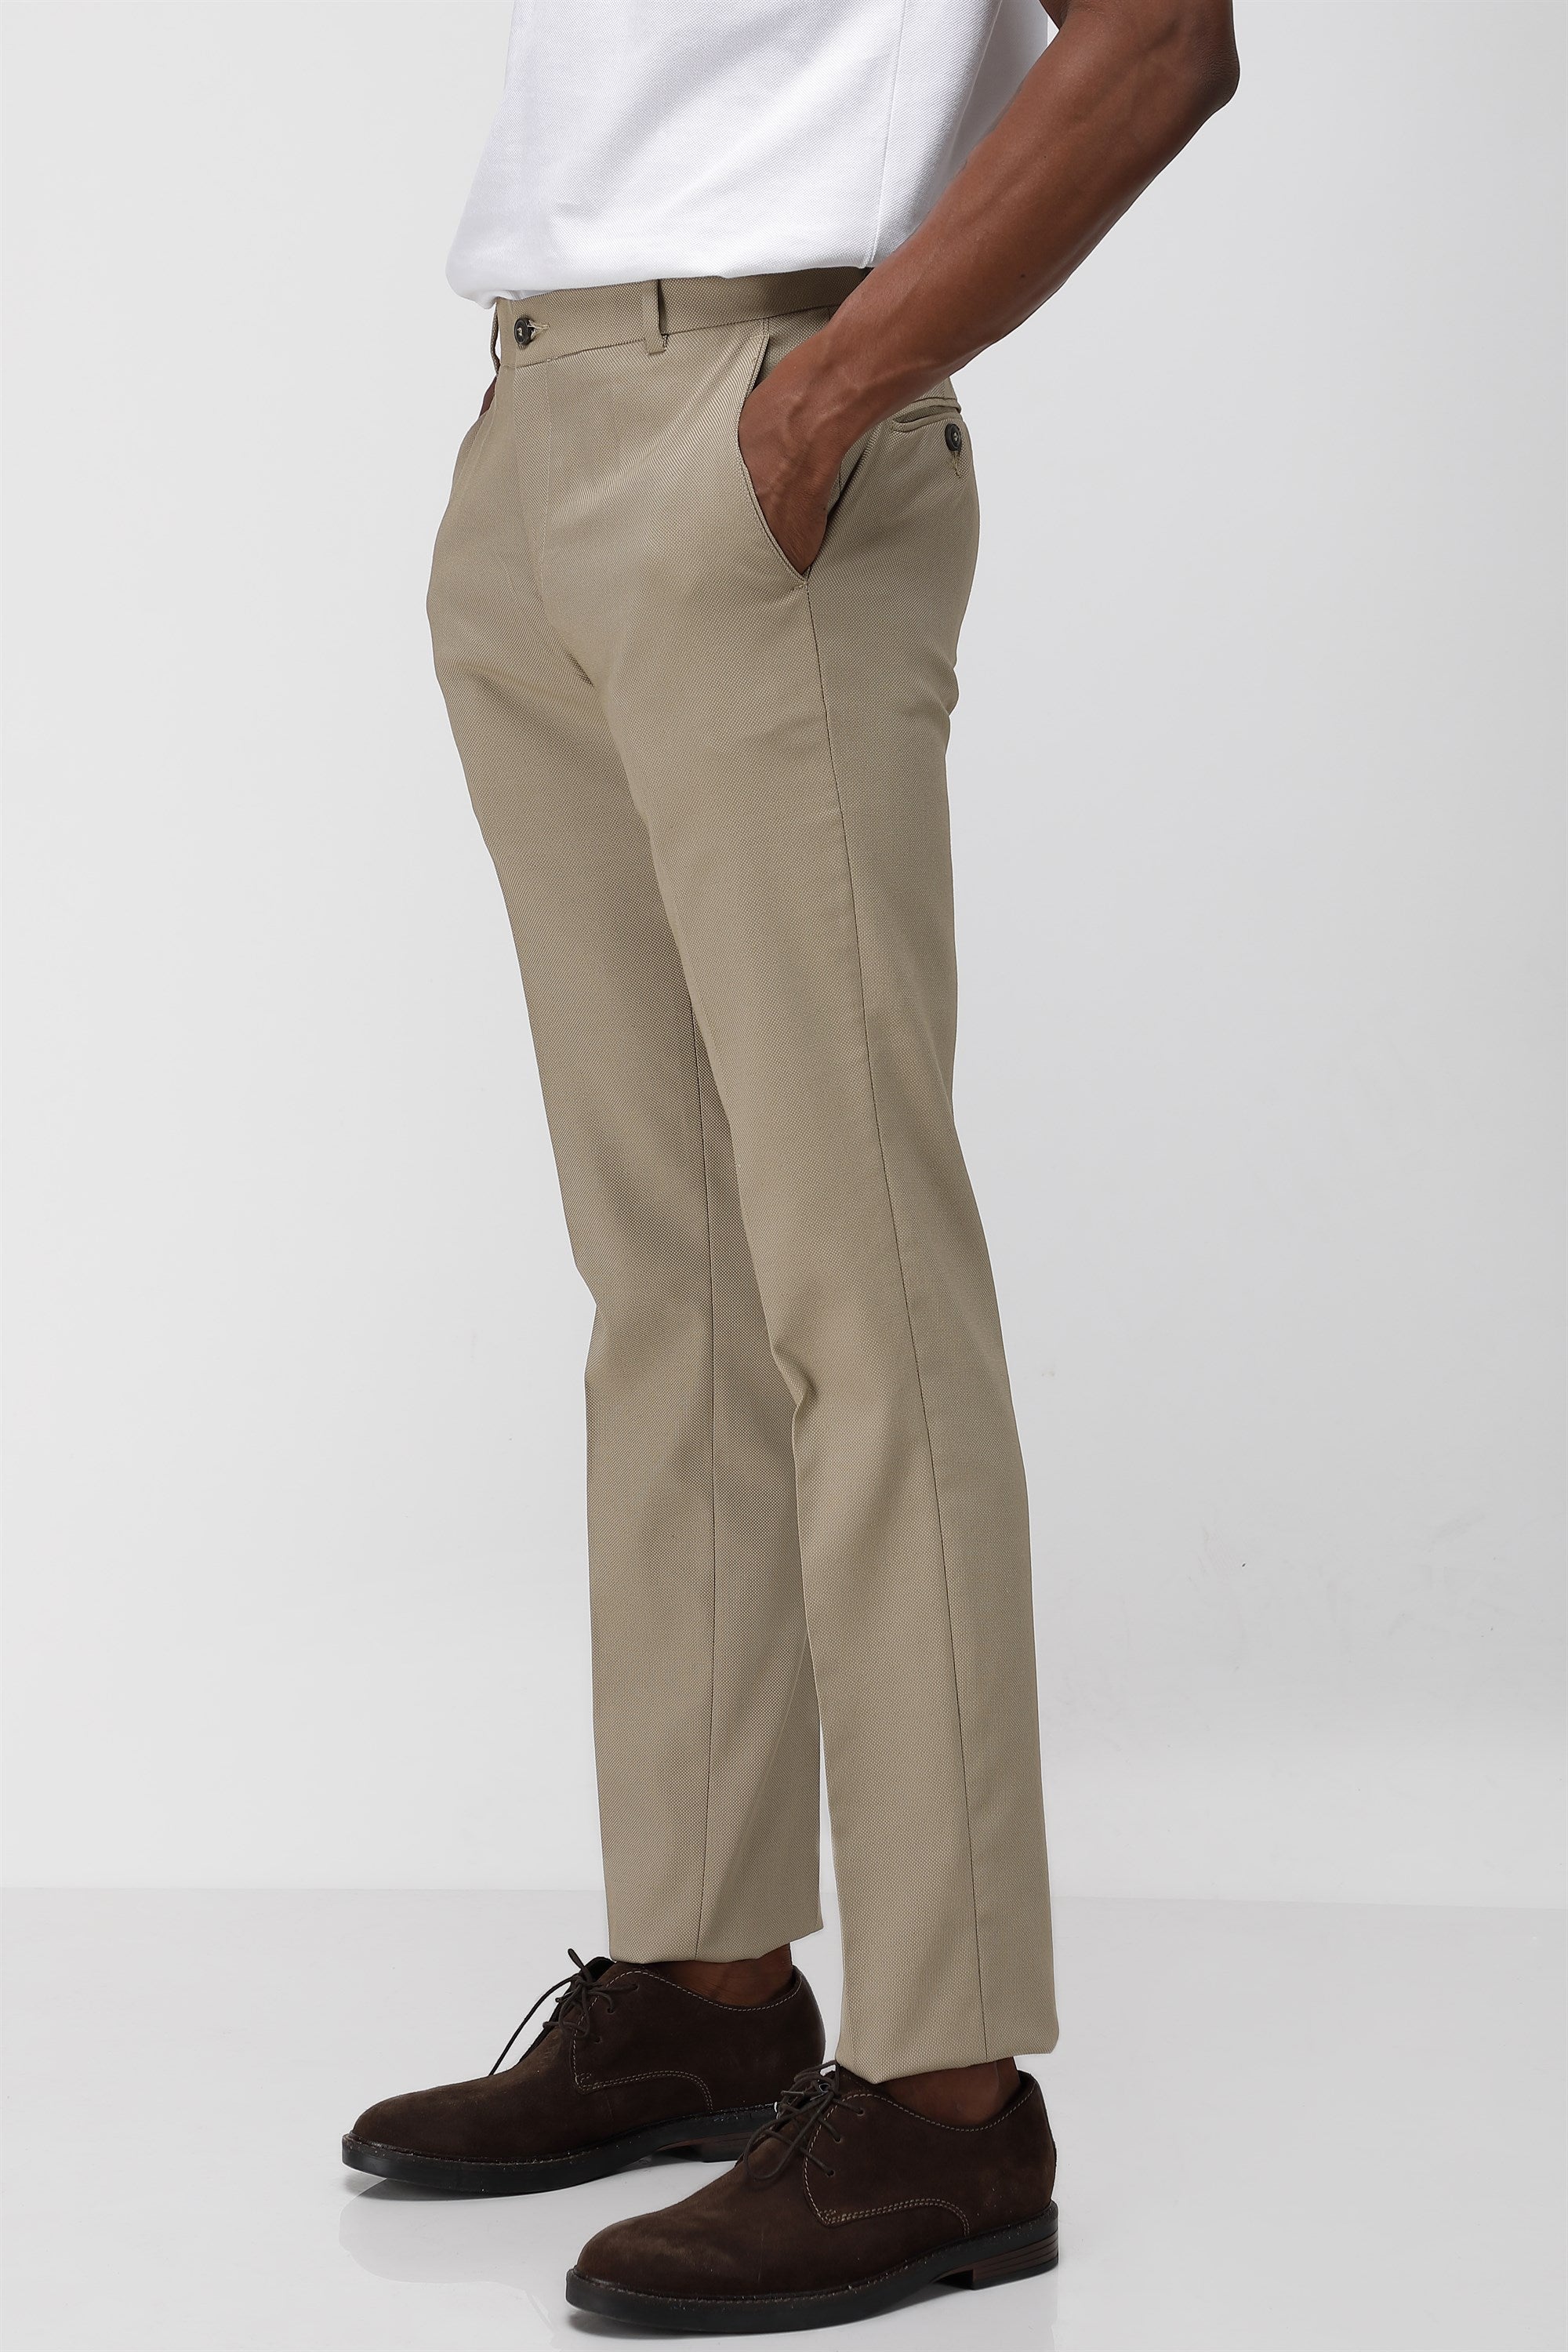 Check Premium Quality Men Trouser Pants, Regular Fit at Rs 389 in Ahmedabad